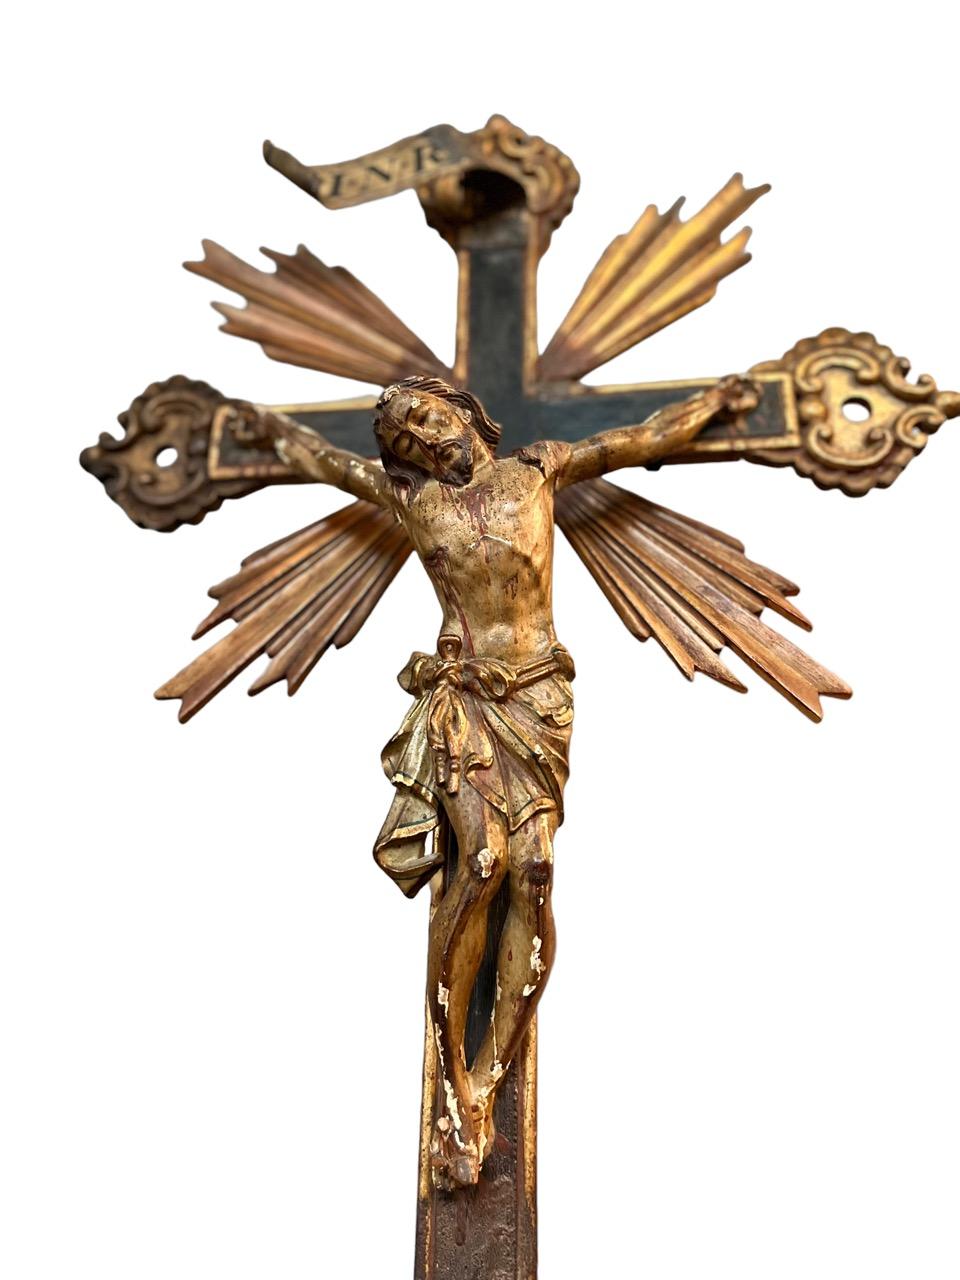 jésus crucifié sur la croix en bois sculpté et doré à l'or fin polychromé du XVIIe siècle en Italie. Extrêmement détaillée et profondément sculptée, elle repose sur son propre support en métal. La pièce peut être accrochée au mur, car elle est dotée